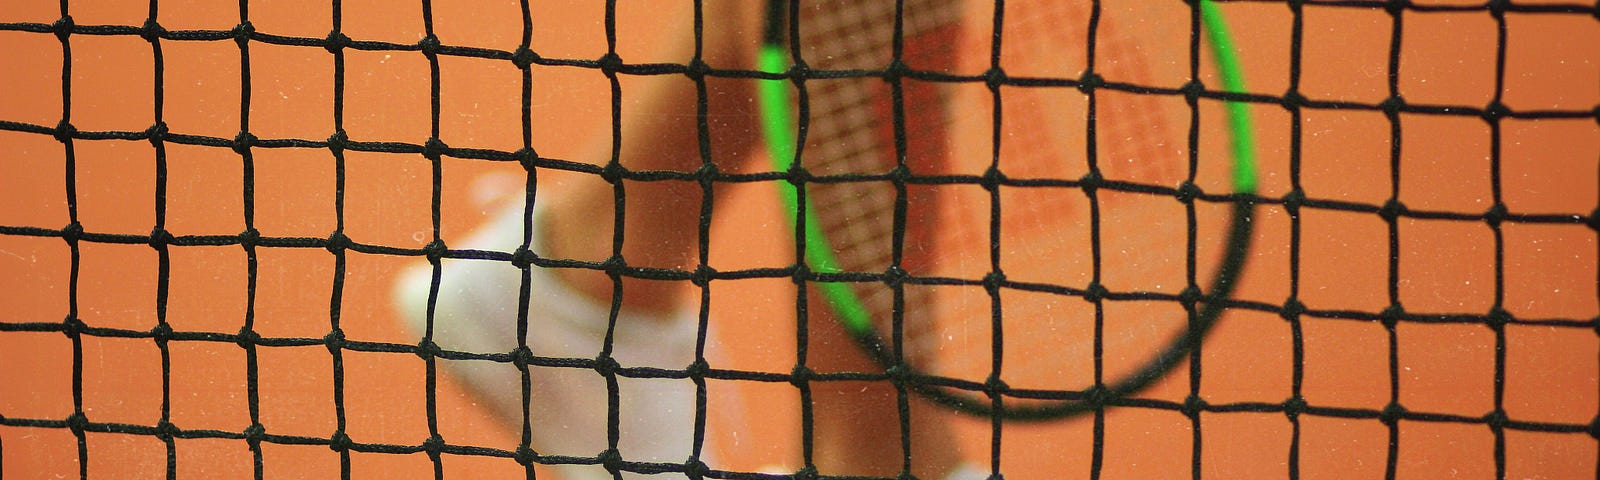 A tennis racquet, net, and a tennis ball